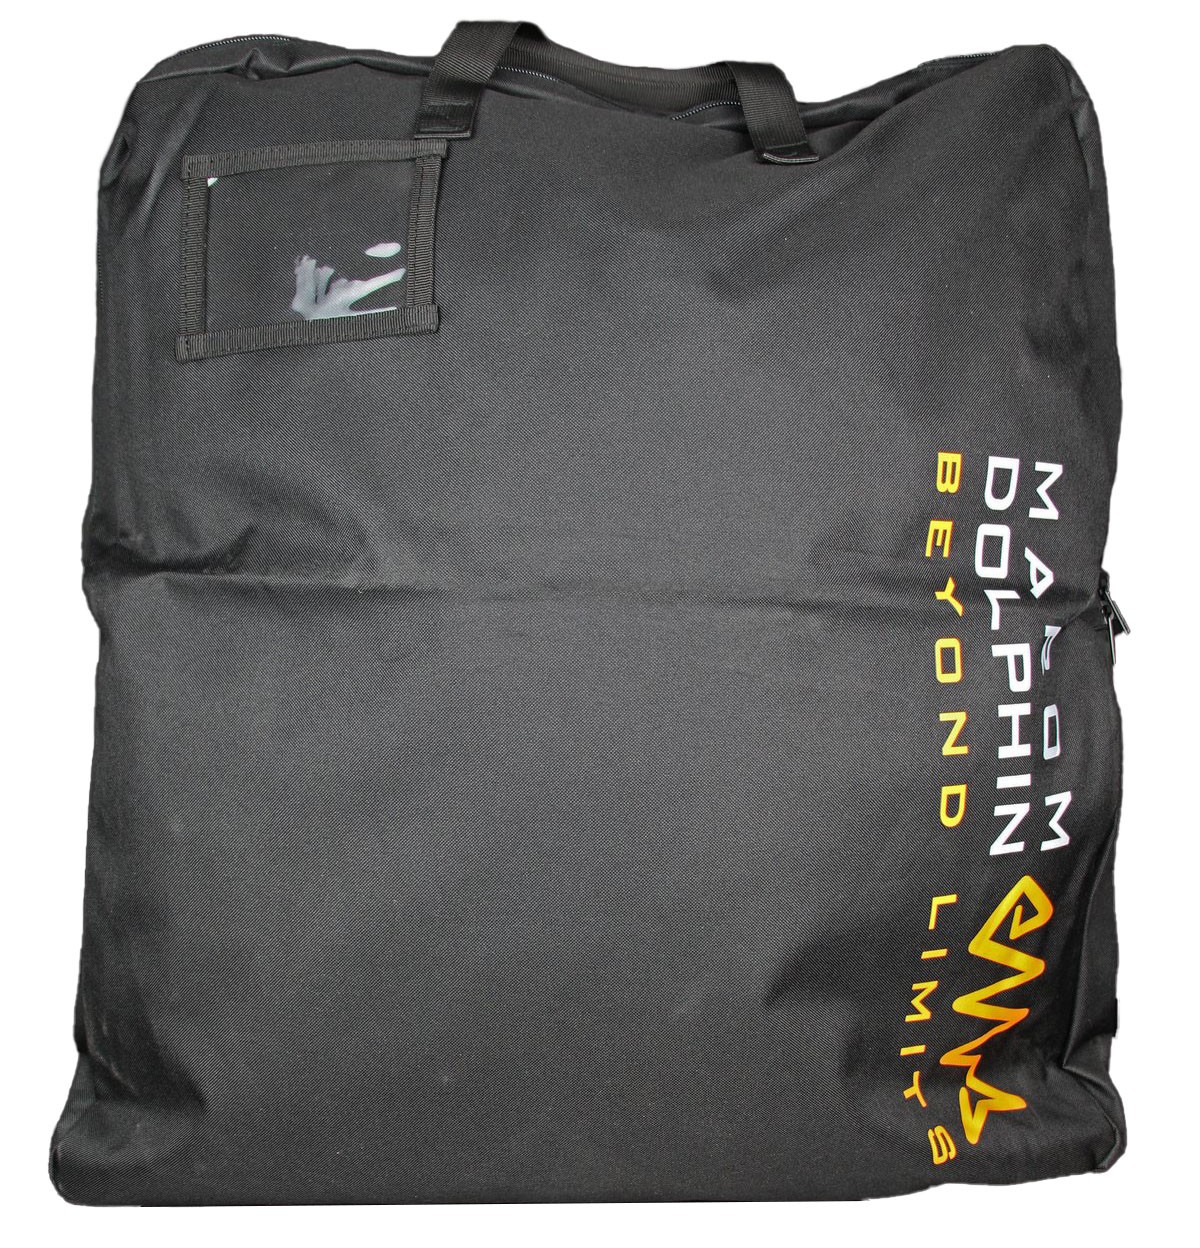 BG6611 Marom Dolphin Carry Bag for Body Armor / Bulletproof vest - YRSInc